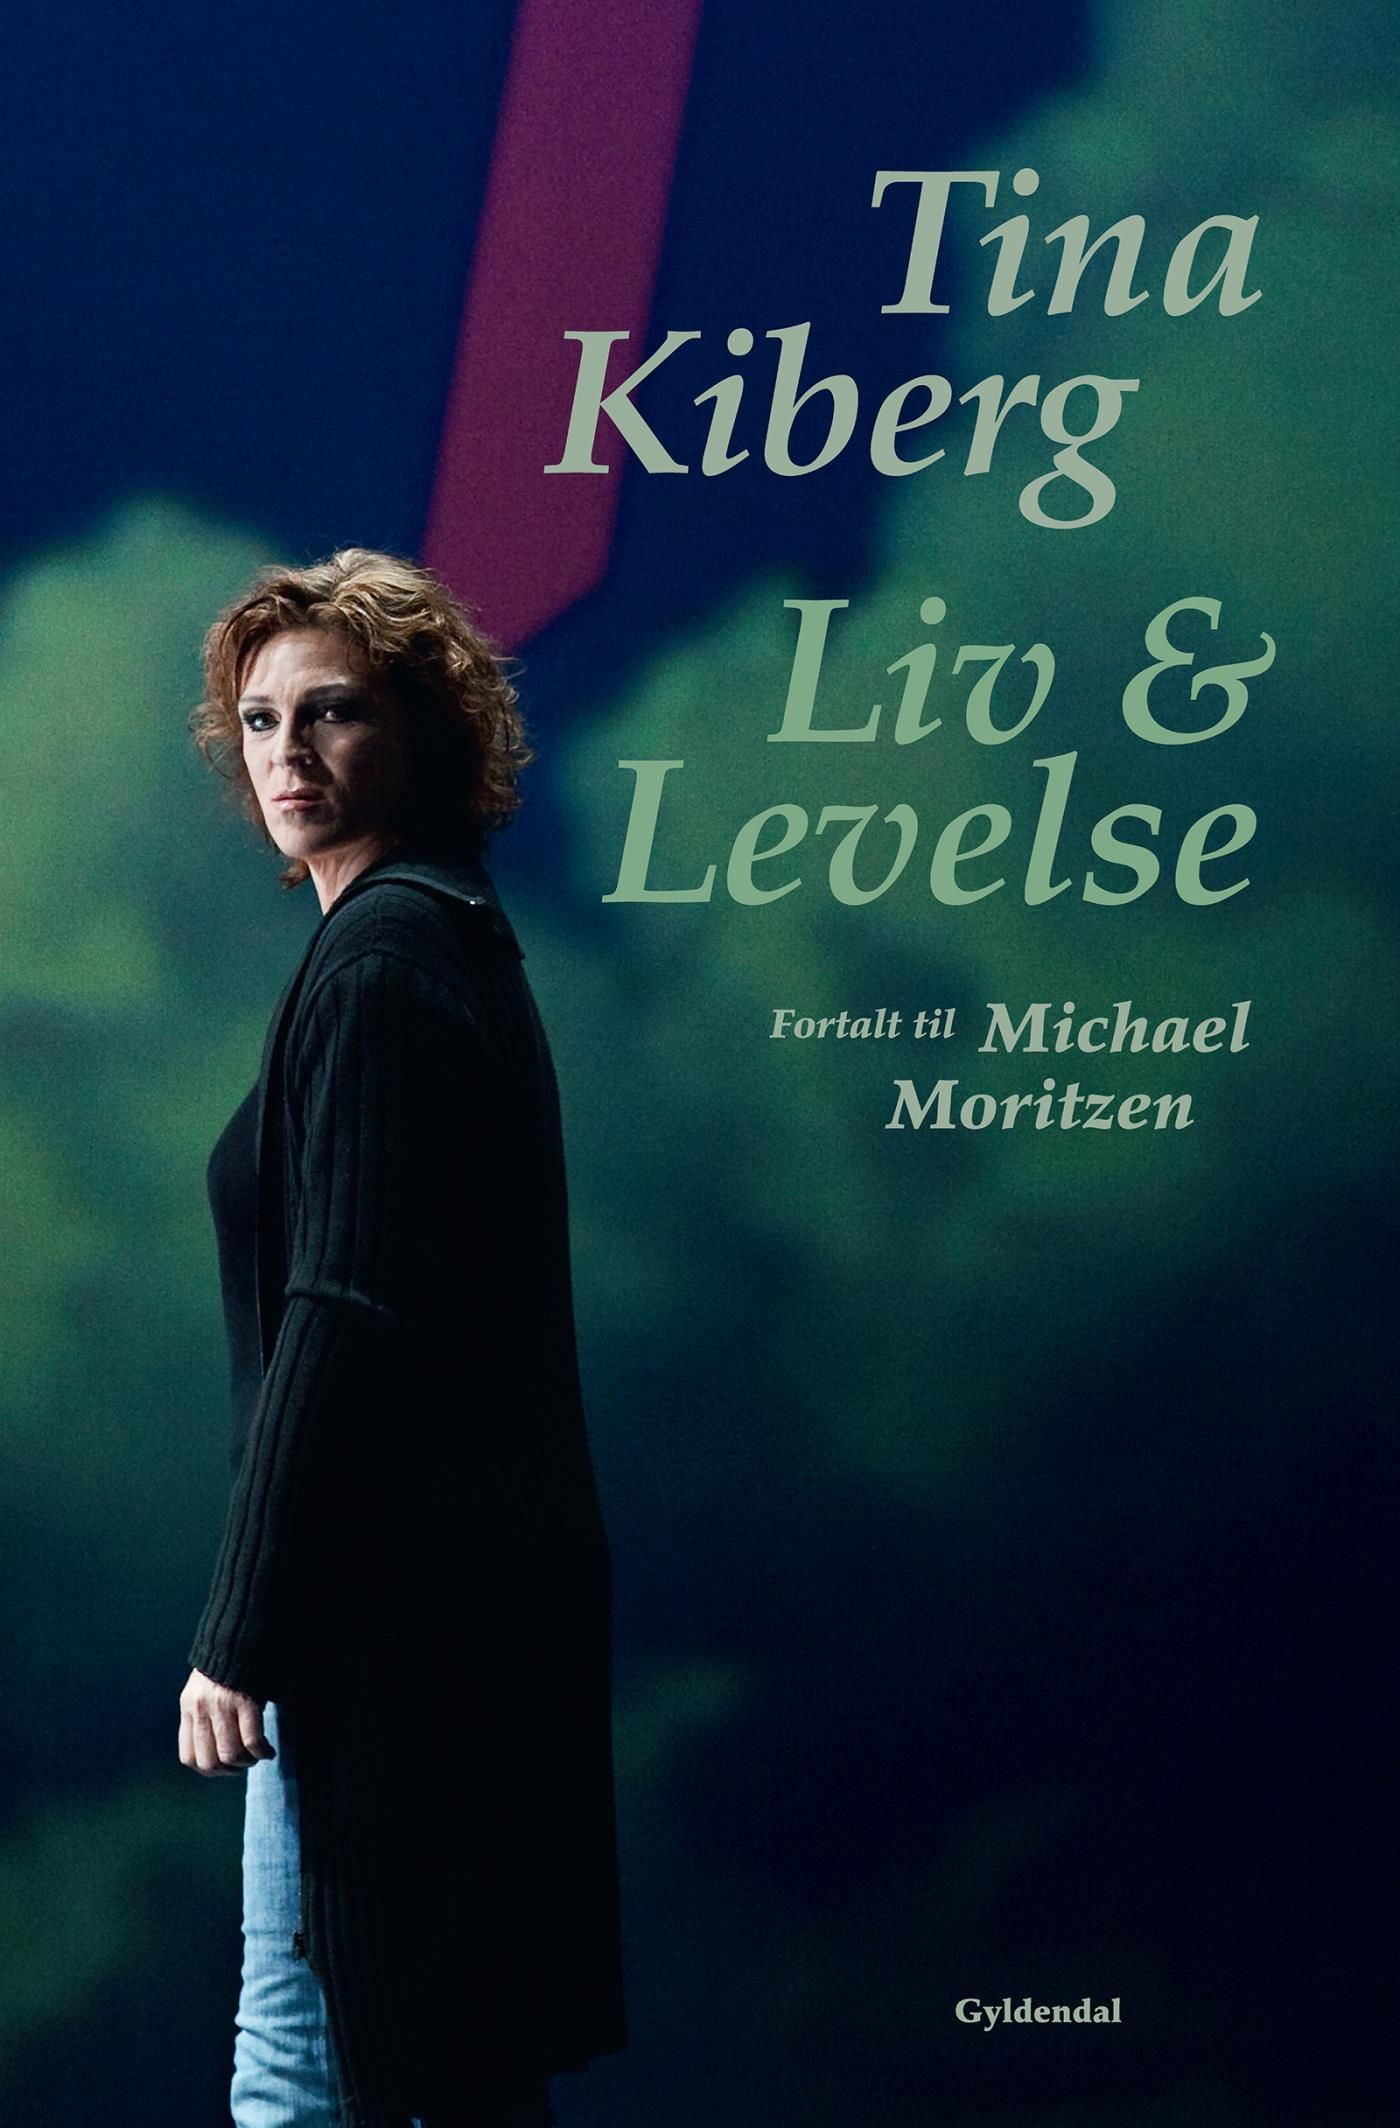 Tina Kiberg, e-bog af Tina Kiberg, Michael Moritzen